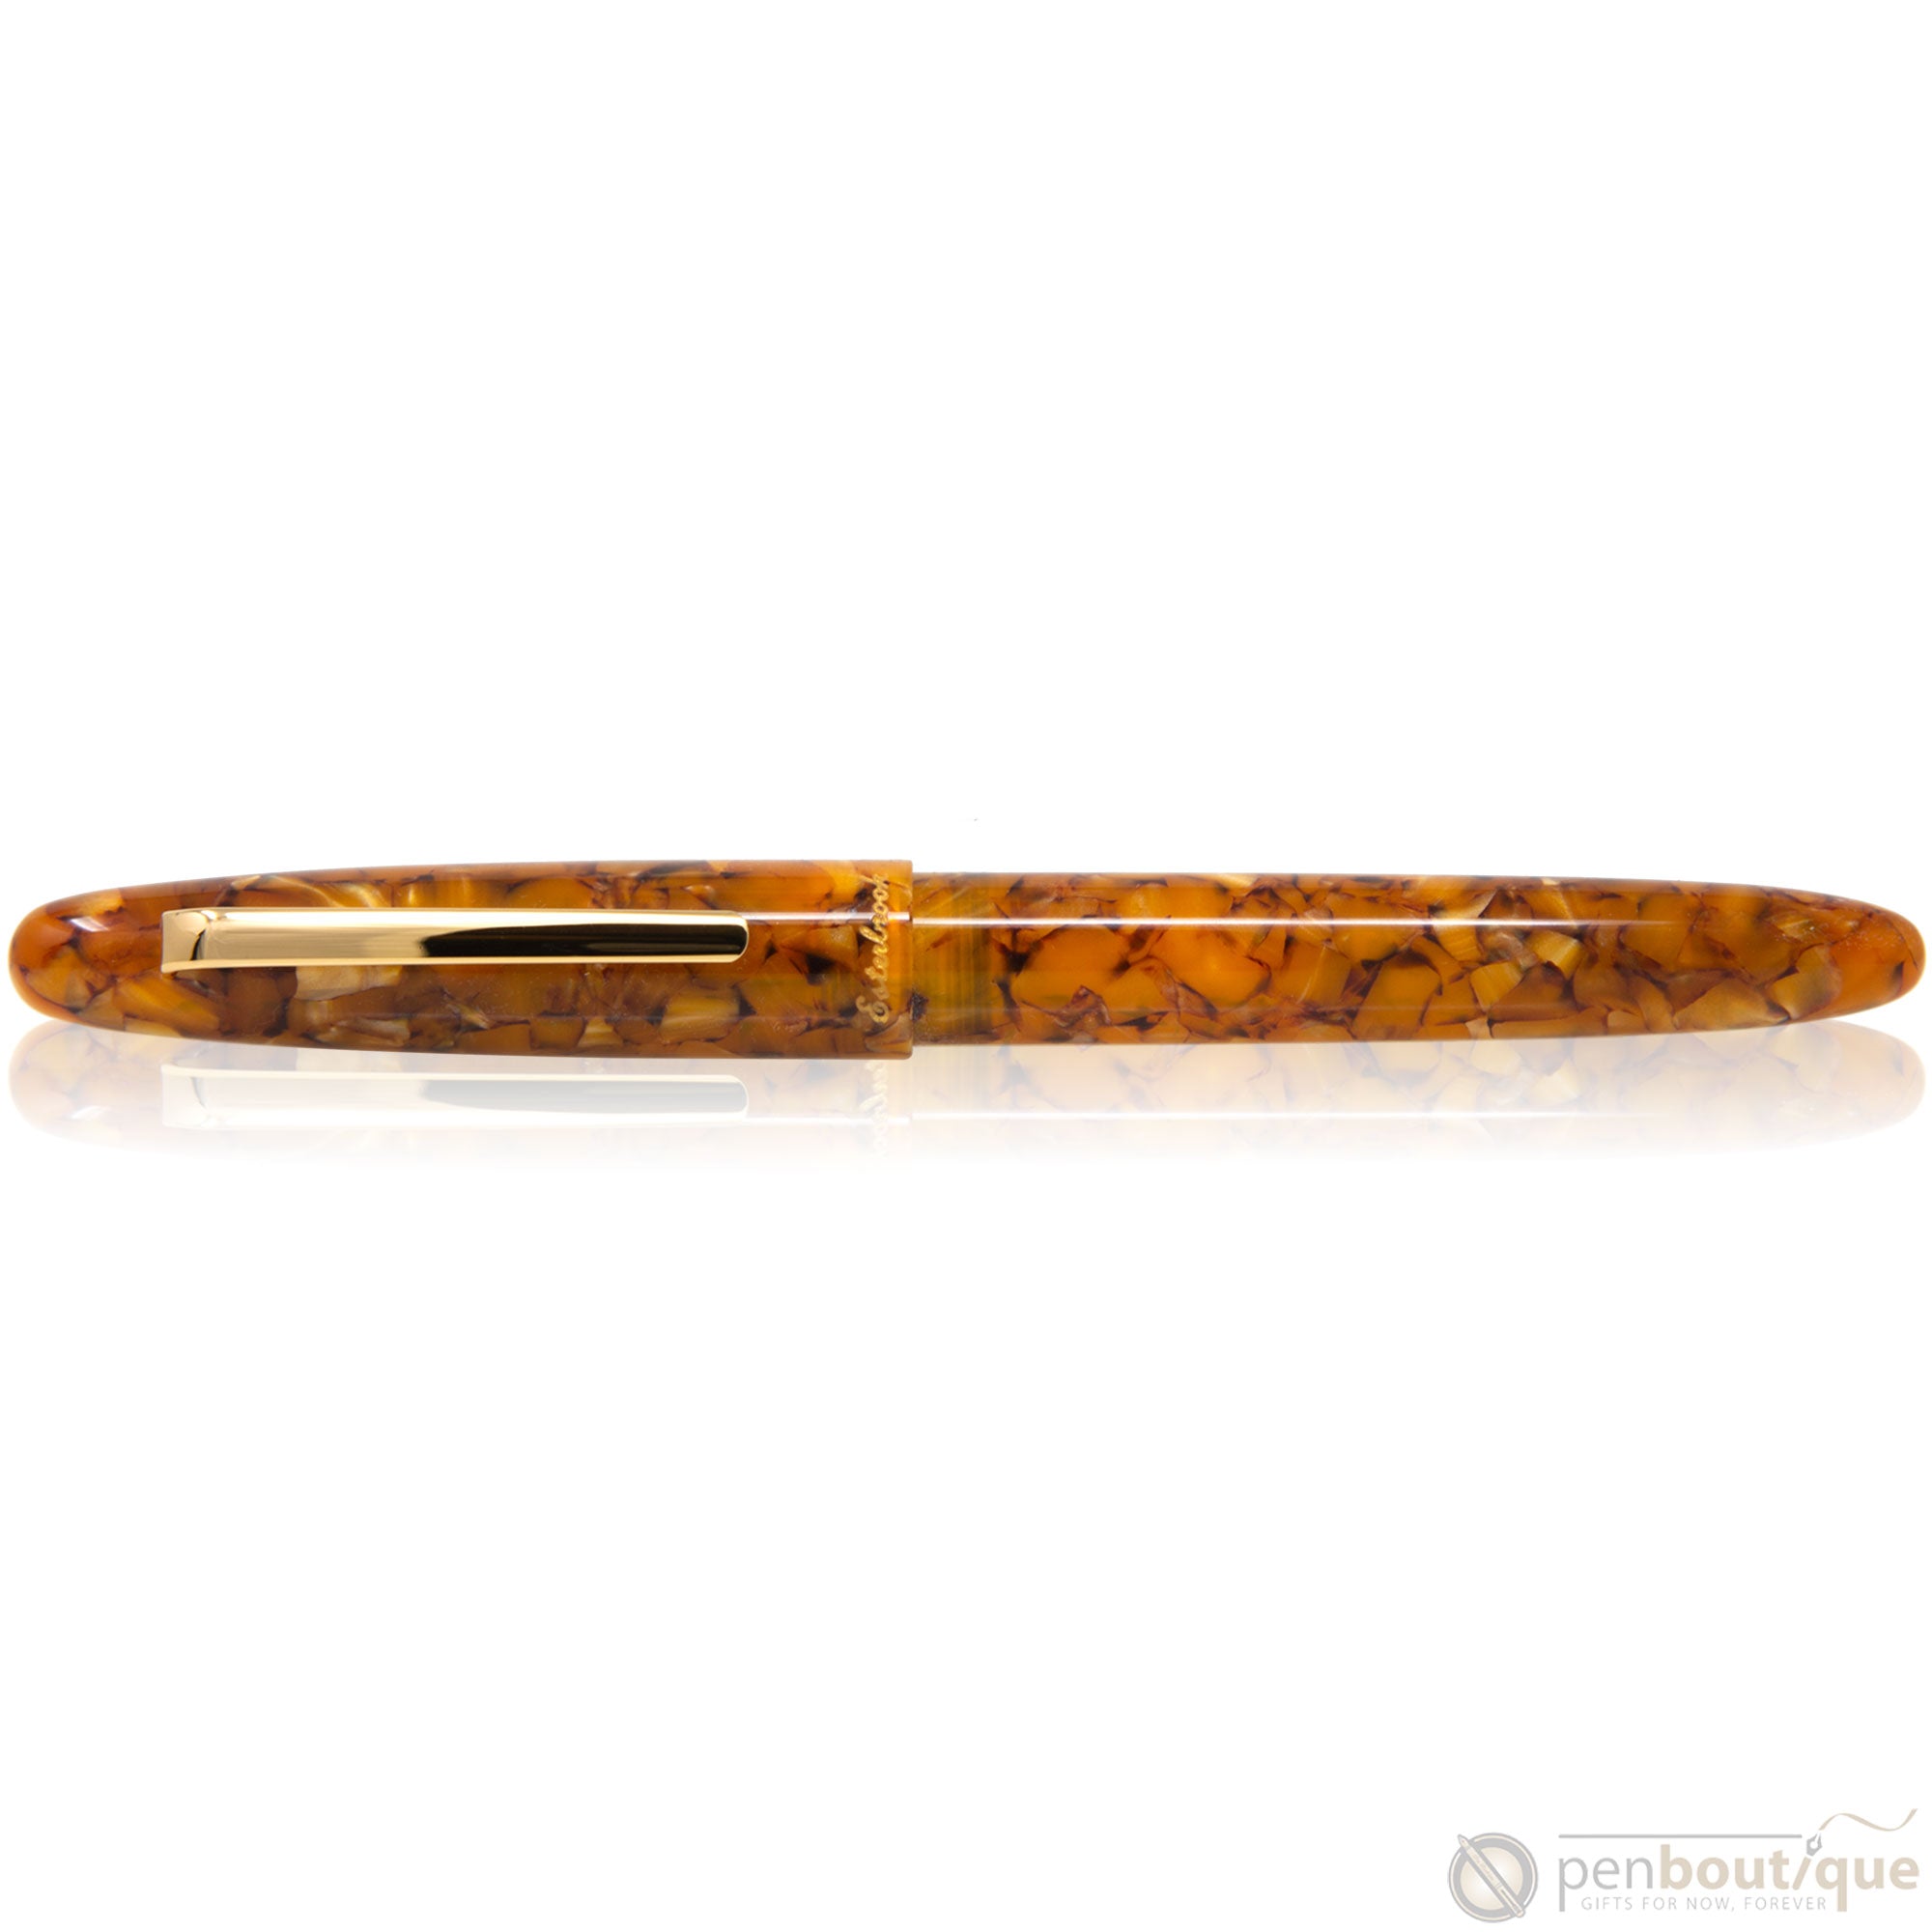 Esterbrook Estie Fountain Pen - Honeycomb - Gold Trim-Pen Boutique Ltd